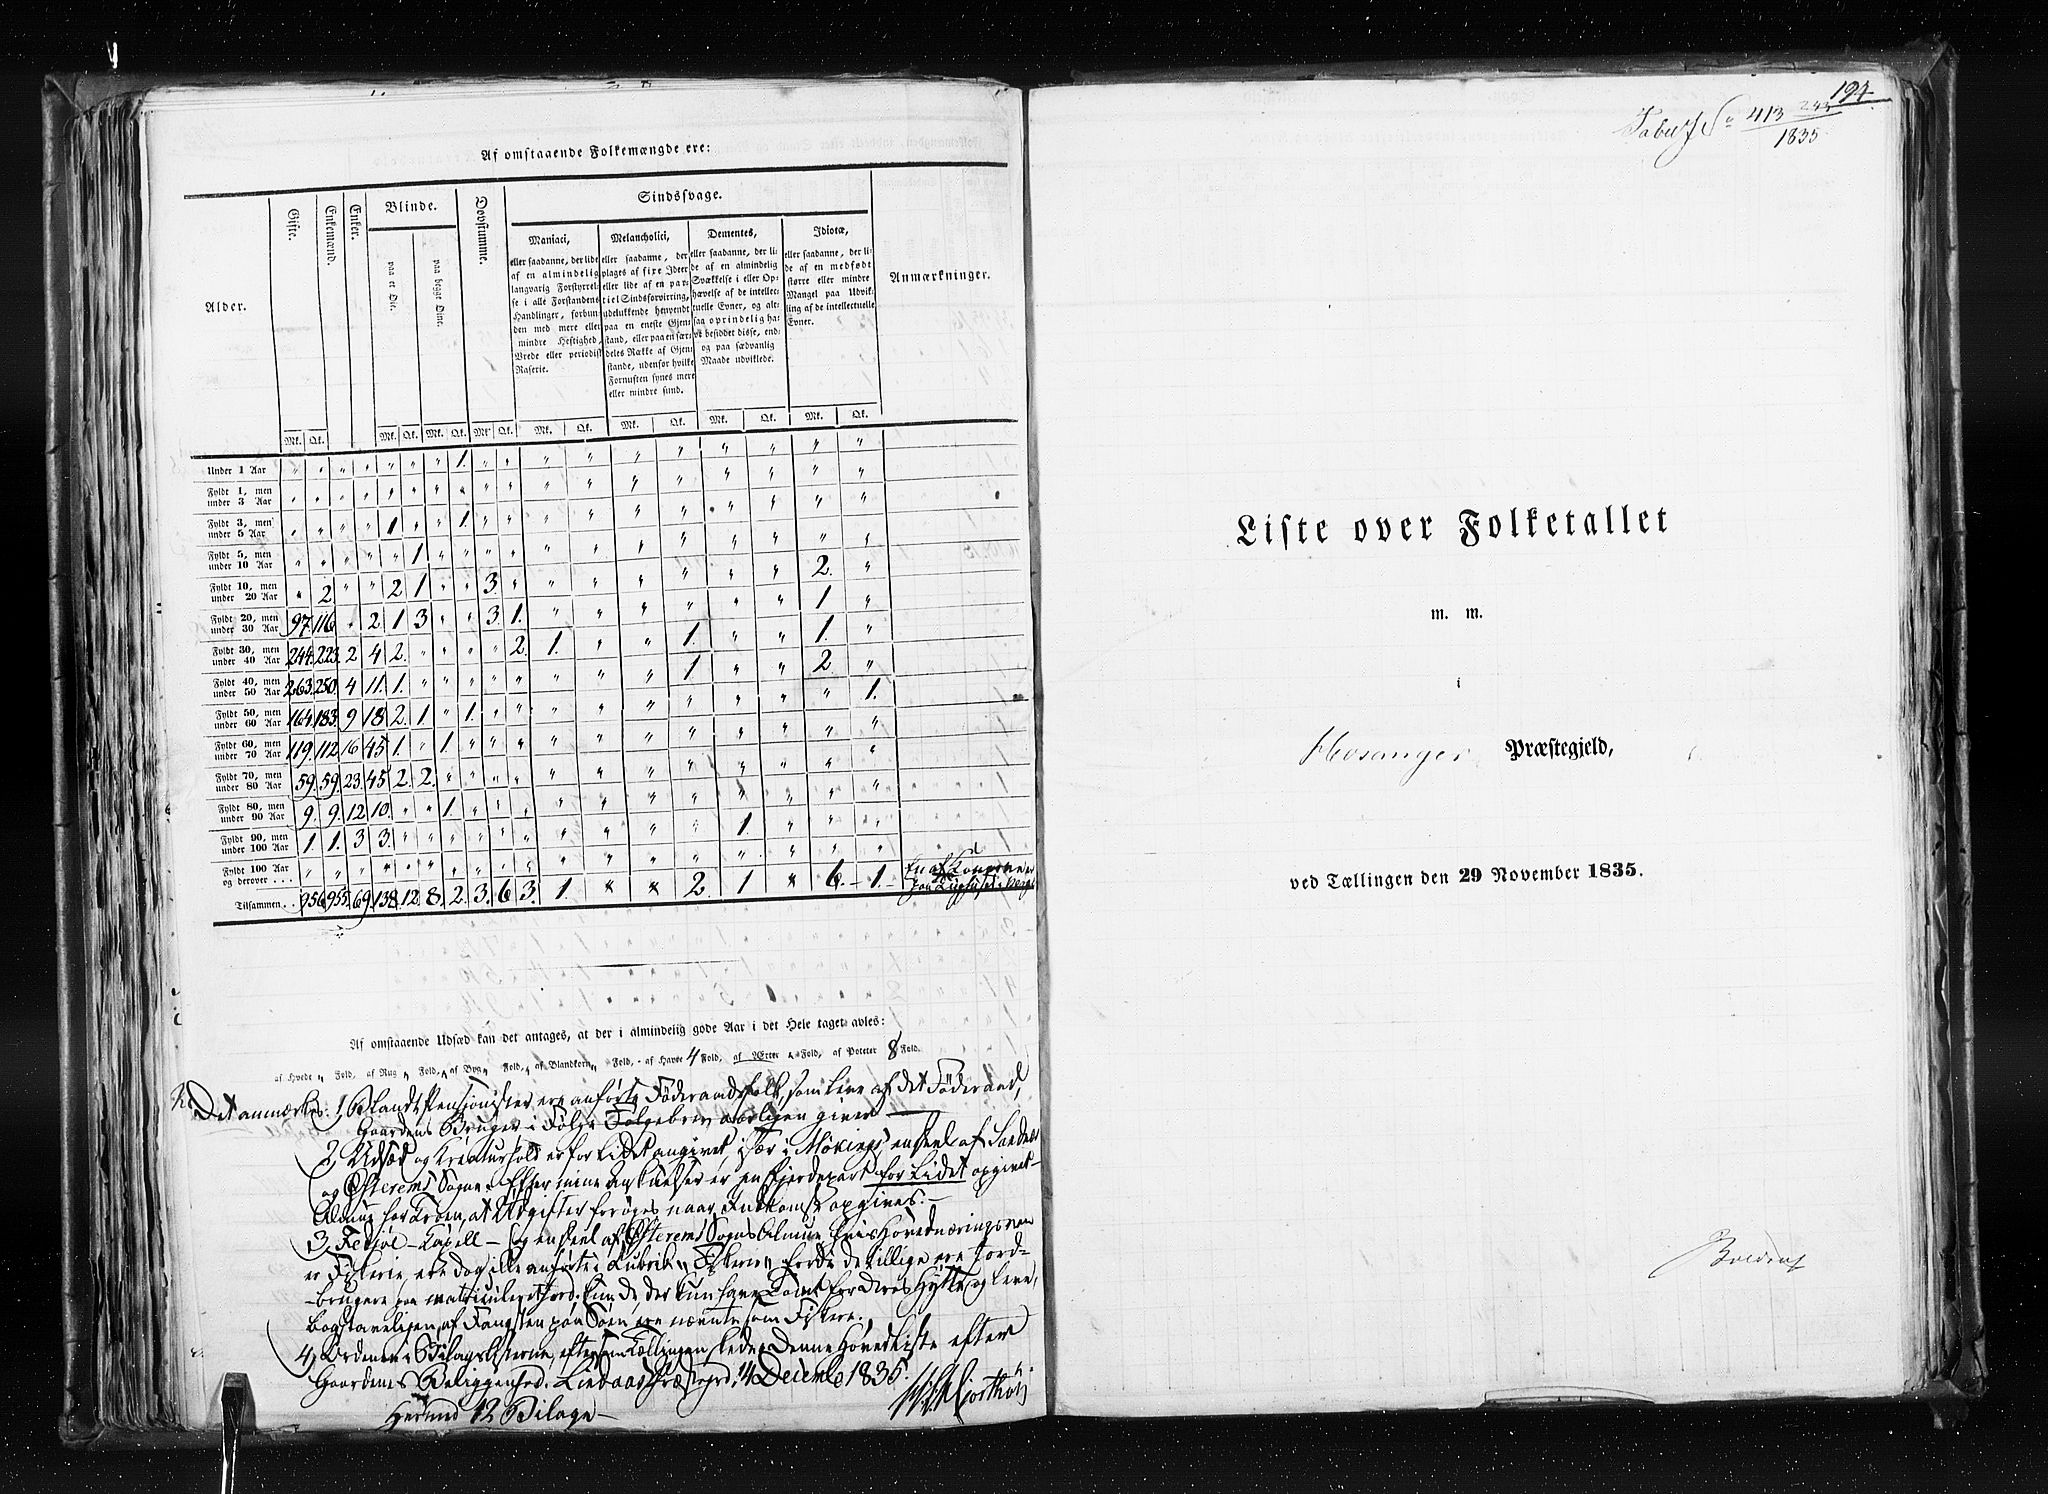 RA, Census 1835, vol. 7: Søndre Bergenhus amt og Nordre Bergenhus amt, 1835, p. 194